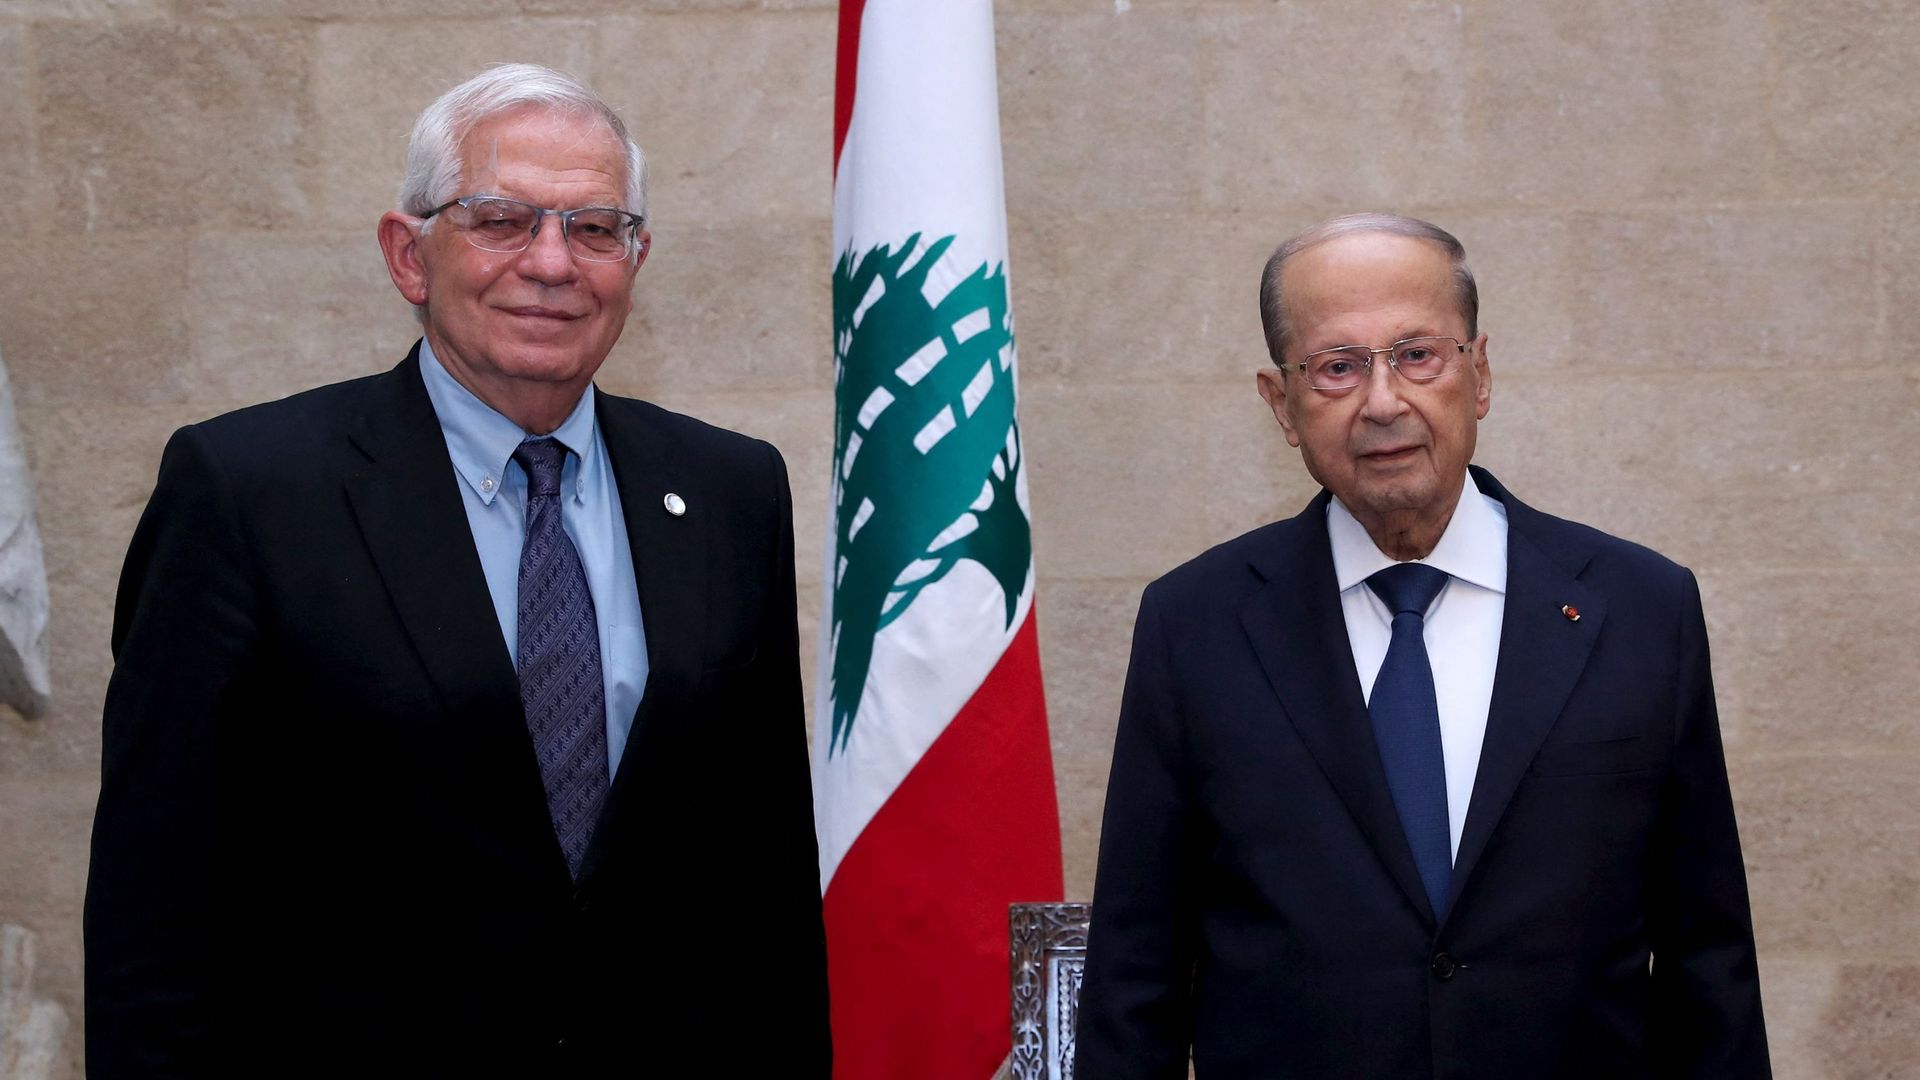 L'Union Européenne veut sanctionner les responsables de la crise politique libanaise pour pousser la création d'un gouvernement